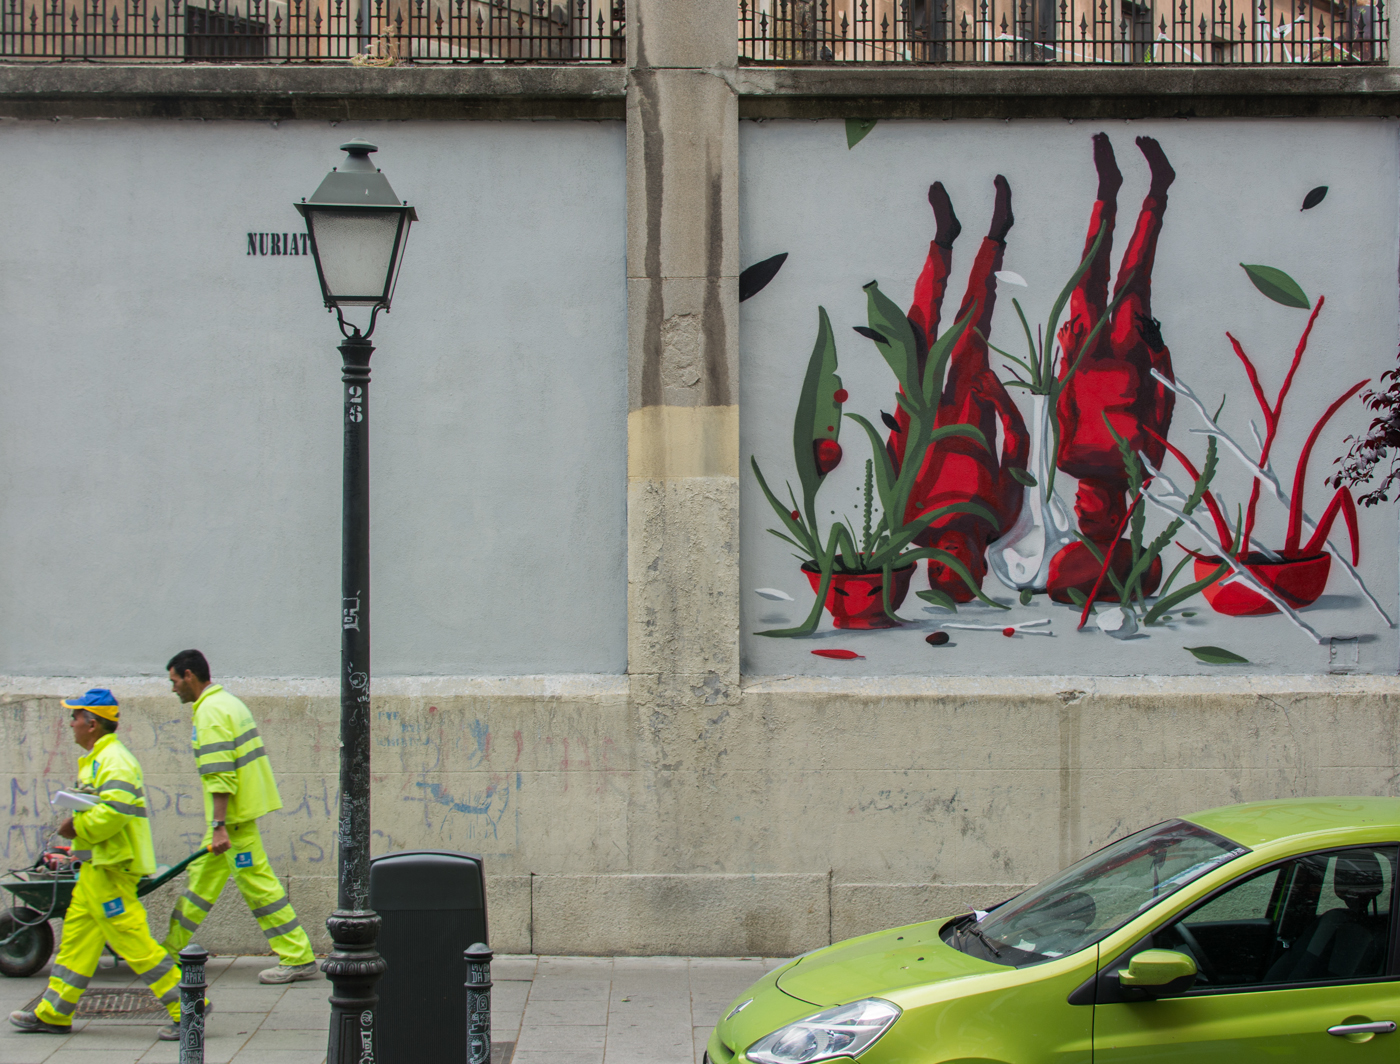 Lolo final - MurosTabacalera by Guillermo de la Madrid - Madrid Street Art Project-001.jpg